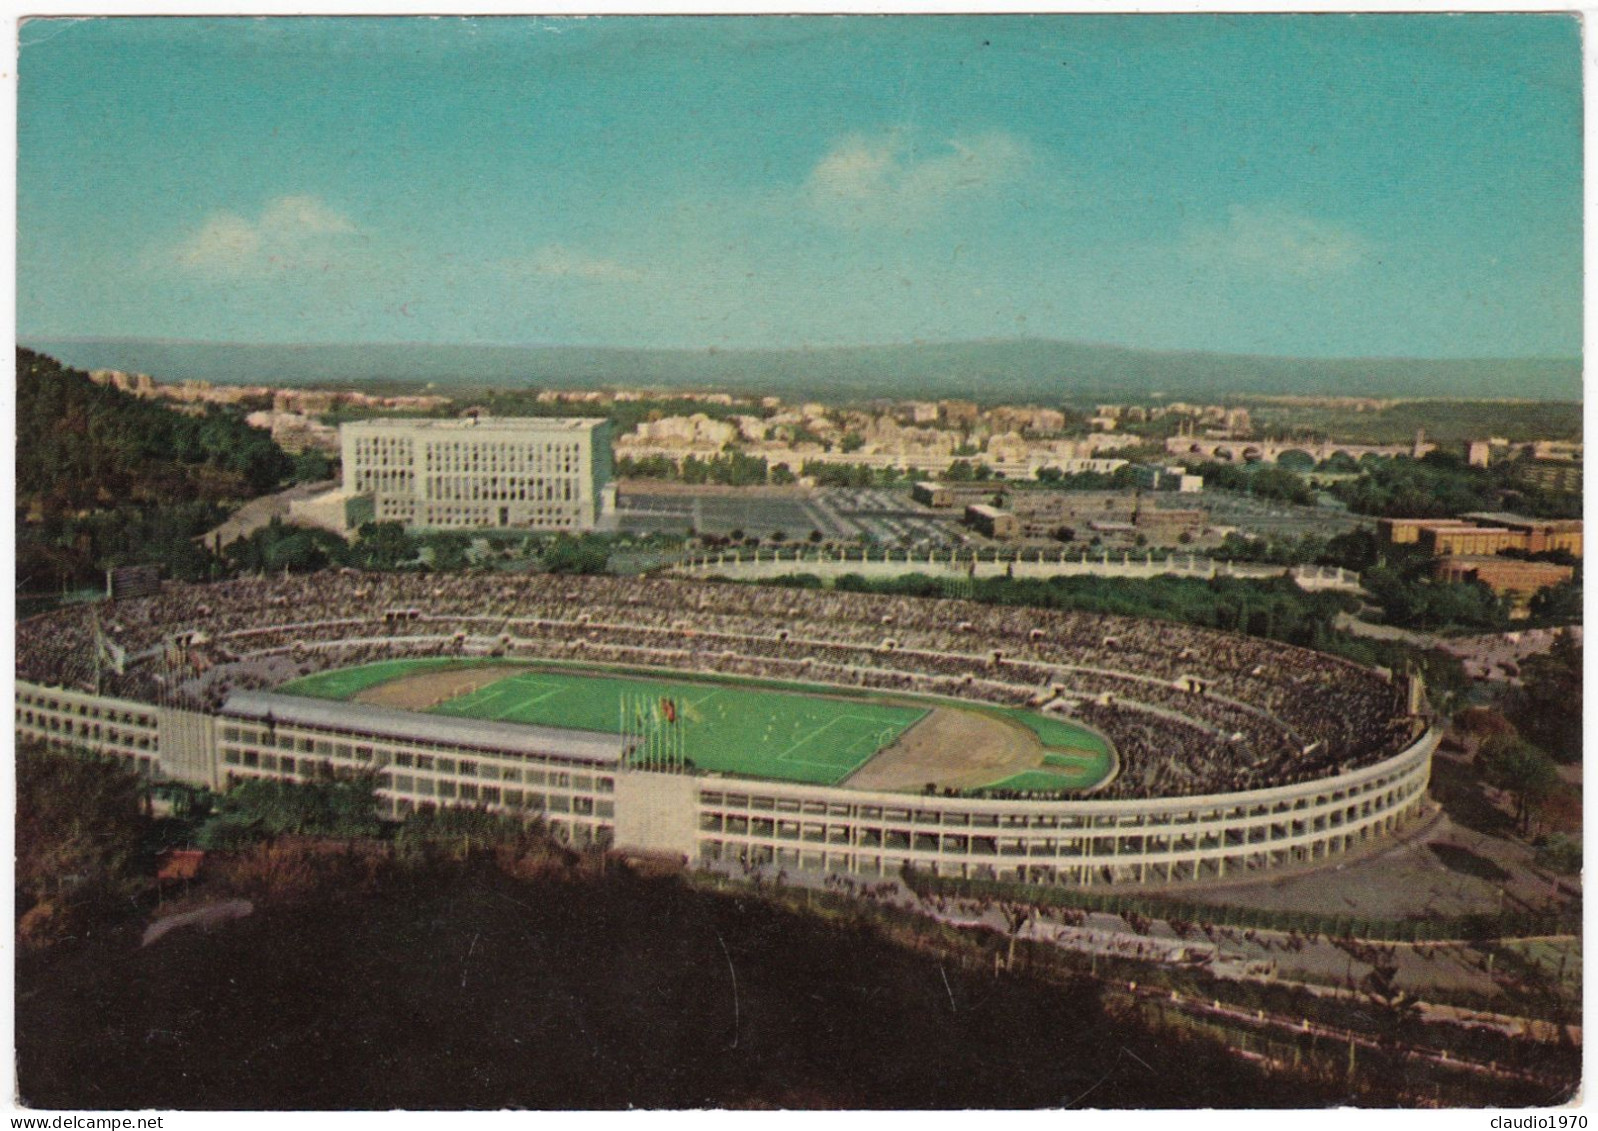 ROMA - CARTOLINA -  STADIO DEI CENTOMILA - VIAGGIATA PER MONZA 1962 - AFFRANCATURA MECCANICA - Stadi & Strutture Sportive